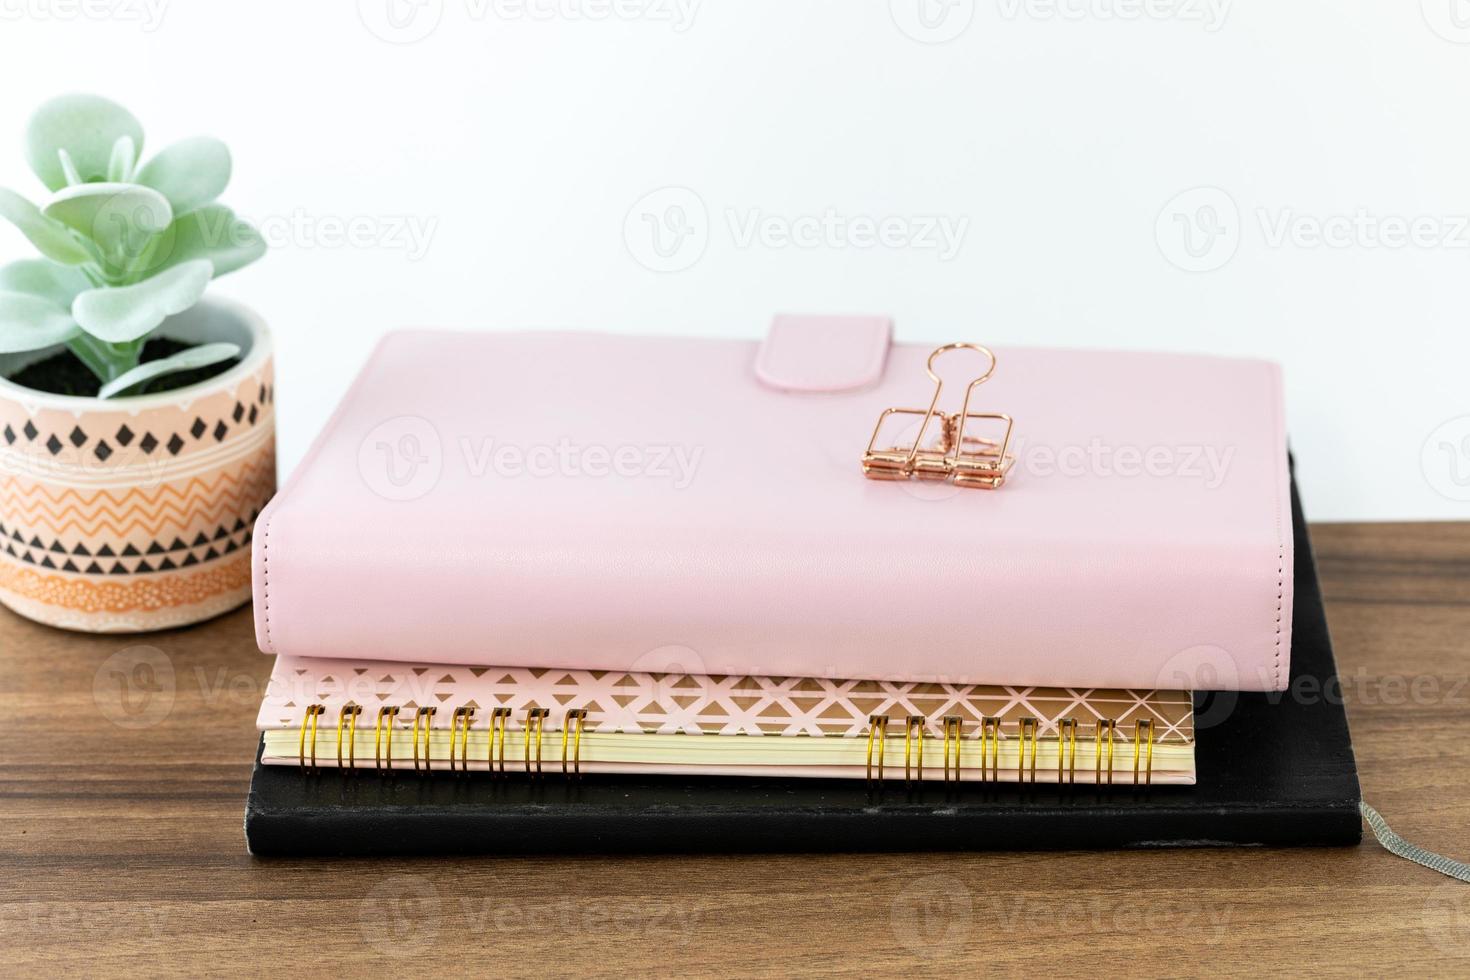 femininer, mädchenhafter arbeitsbereich mit rosa organisator, ringnotizbuch und schwarzem einbandskizzenbuch auf holztischplatte. foto